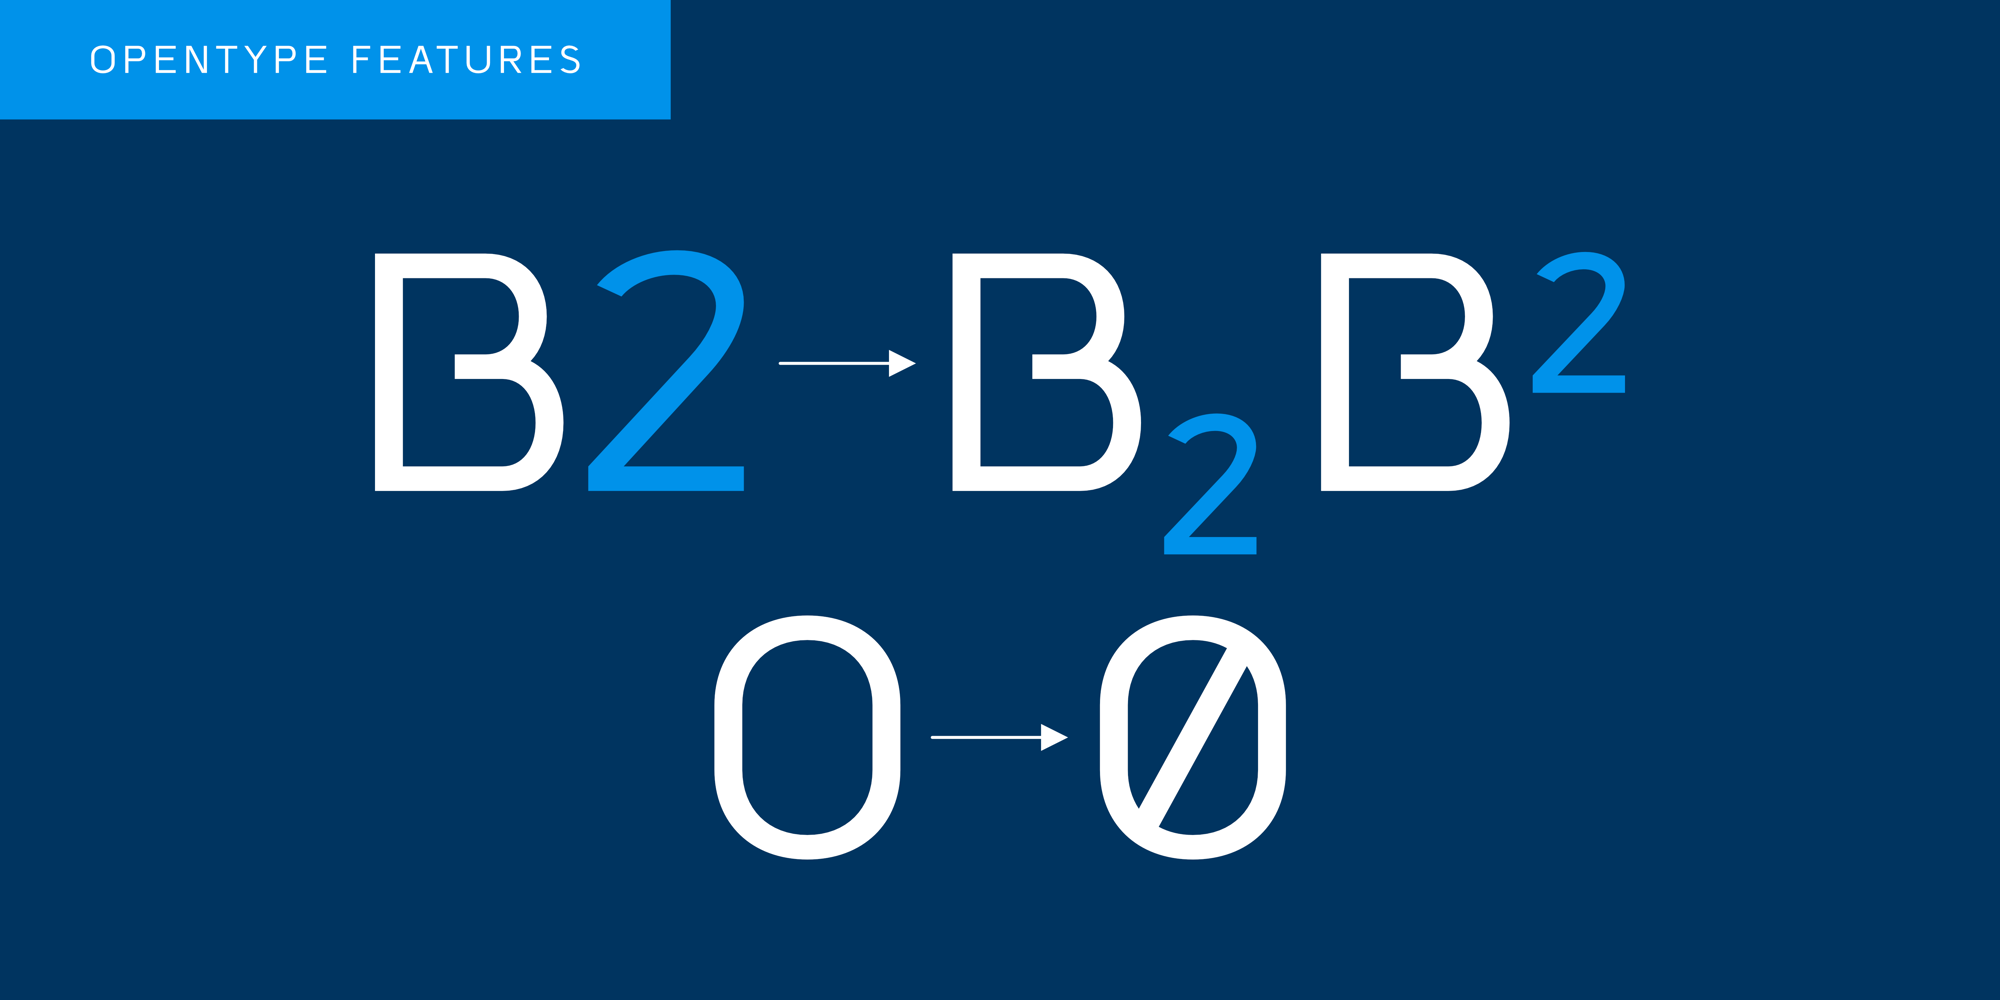 Bilbao Sans Typeface - OpenType Features